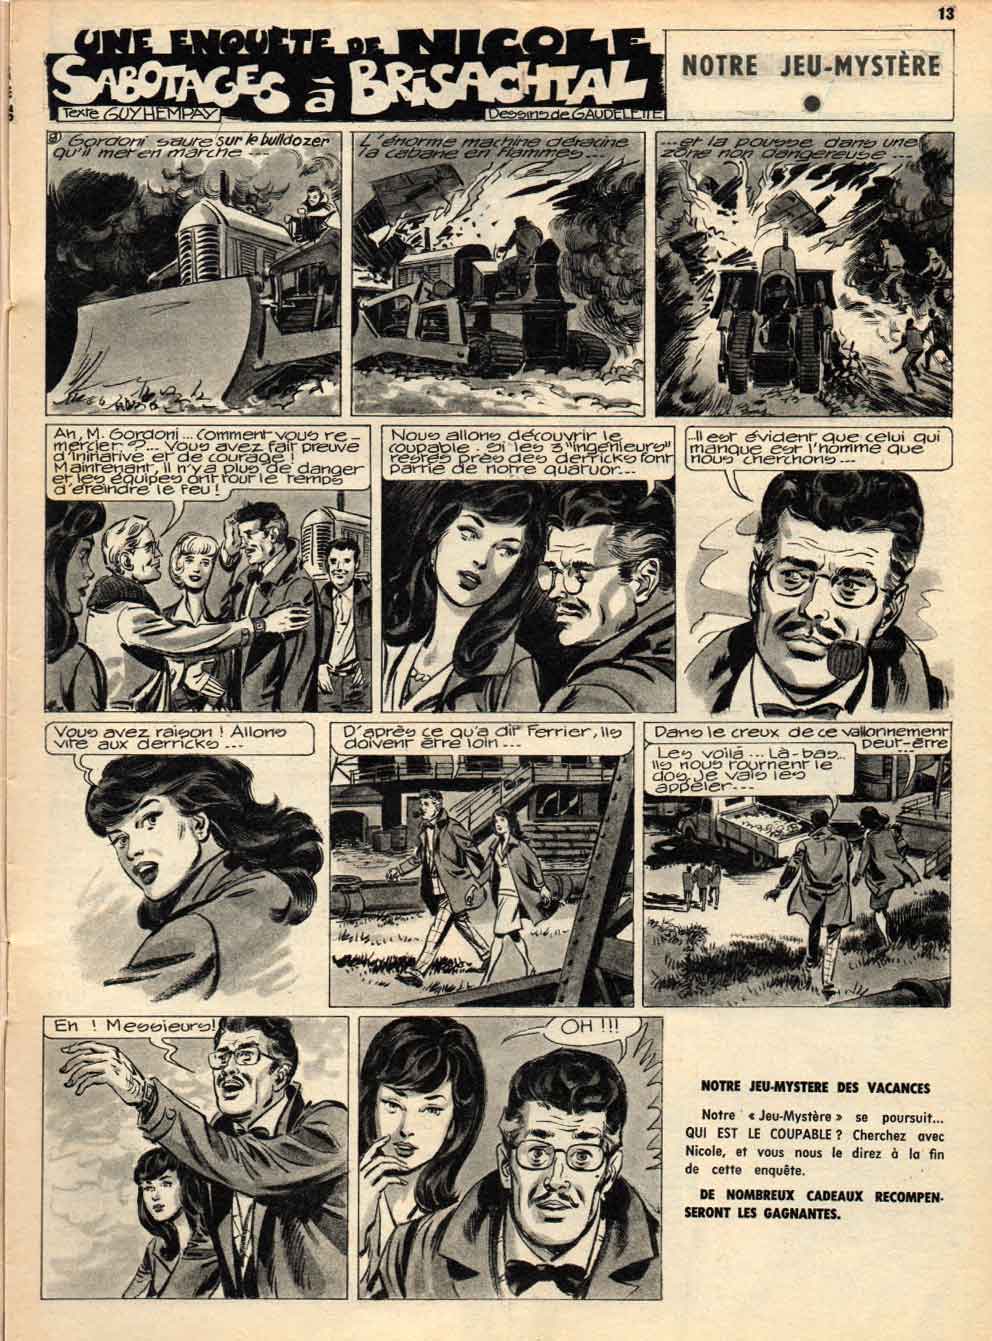 « Une enquête de Nicole » J2 magazine n° 23 (09/07/1964).